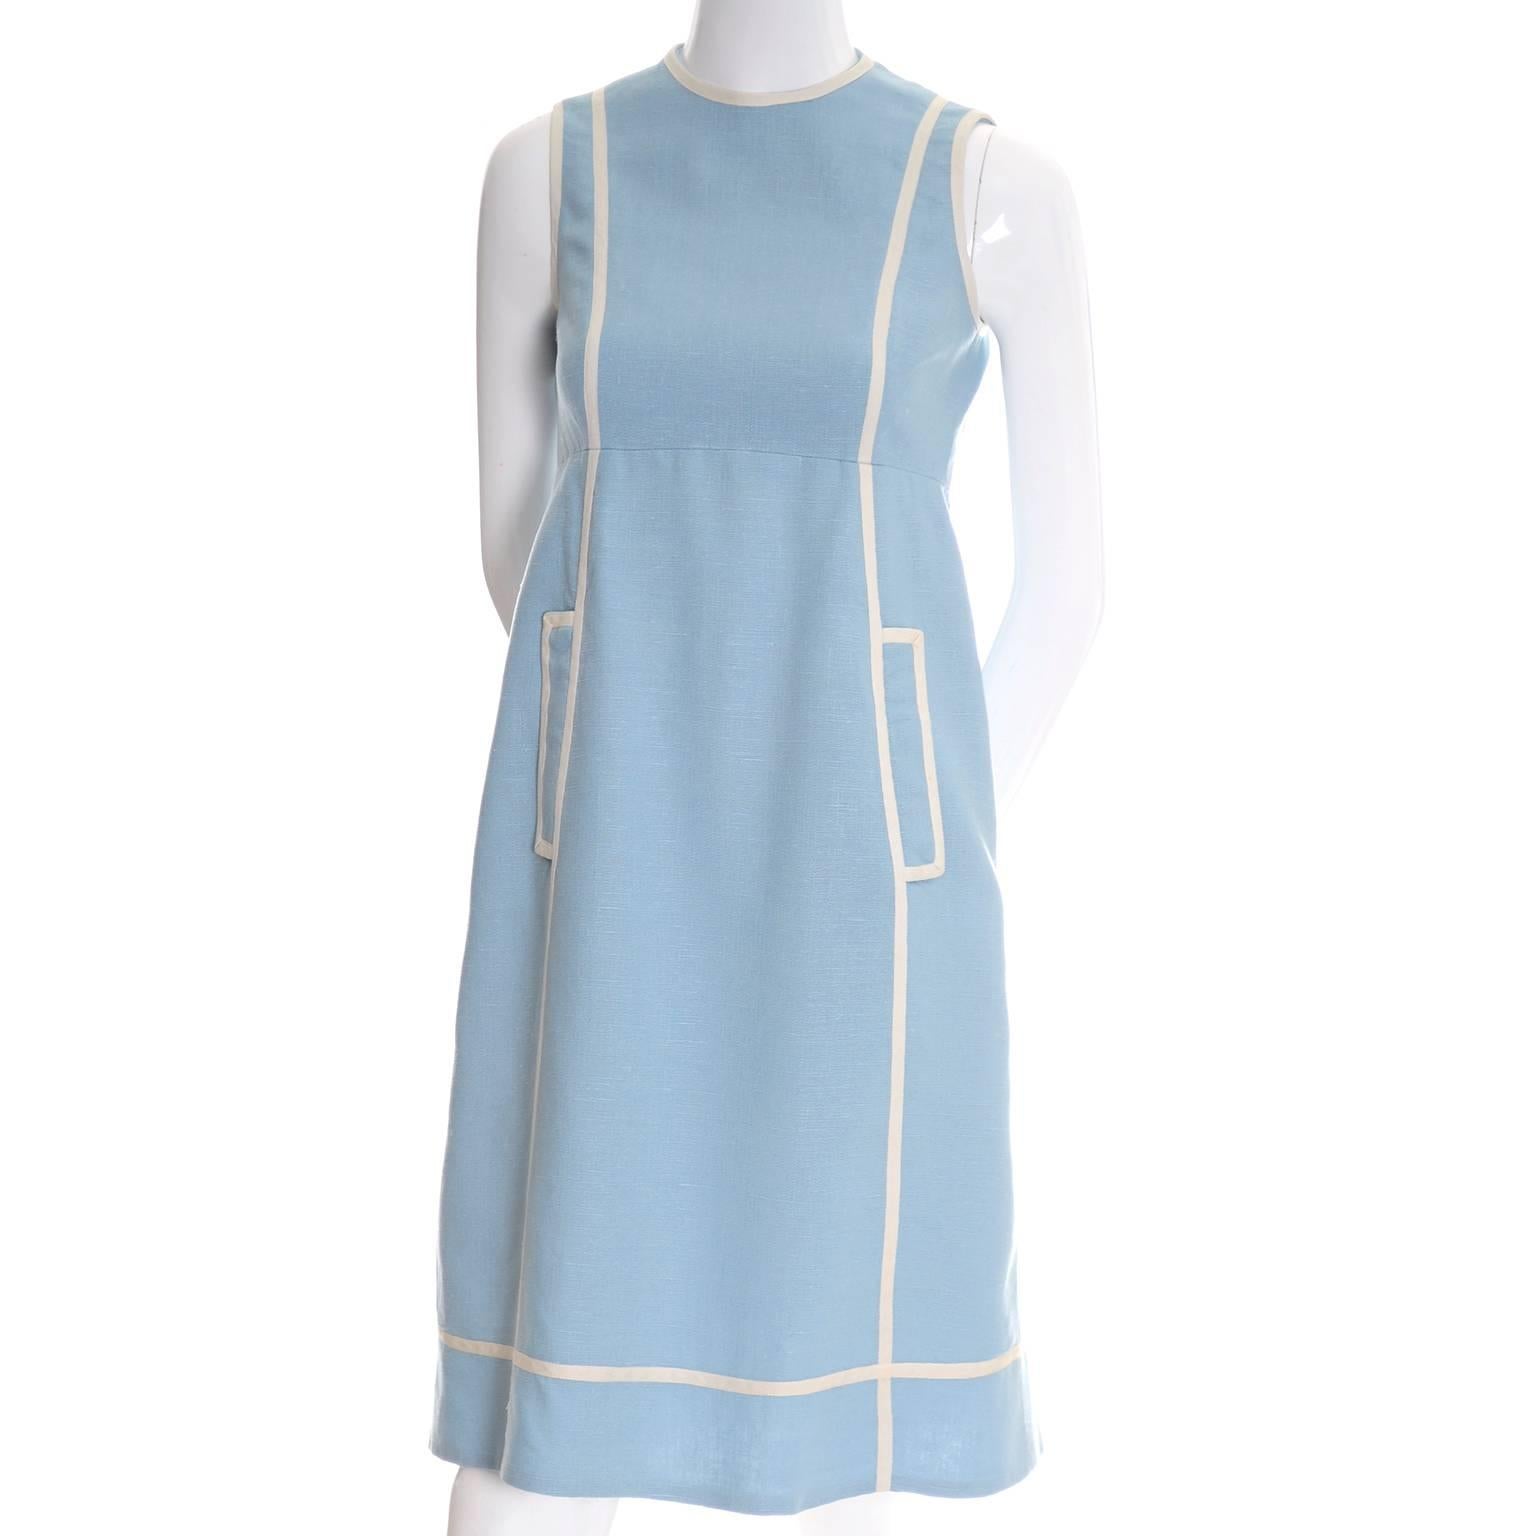 empire waist blue dress